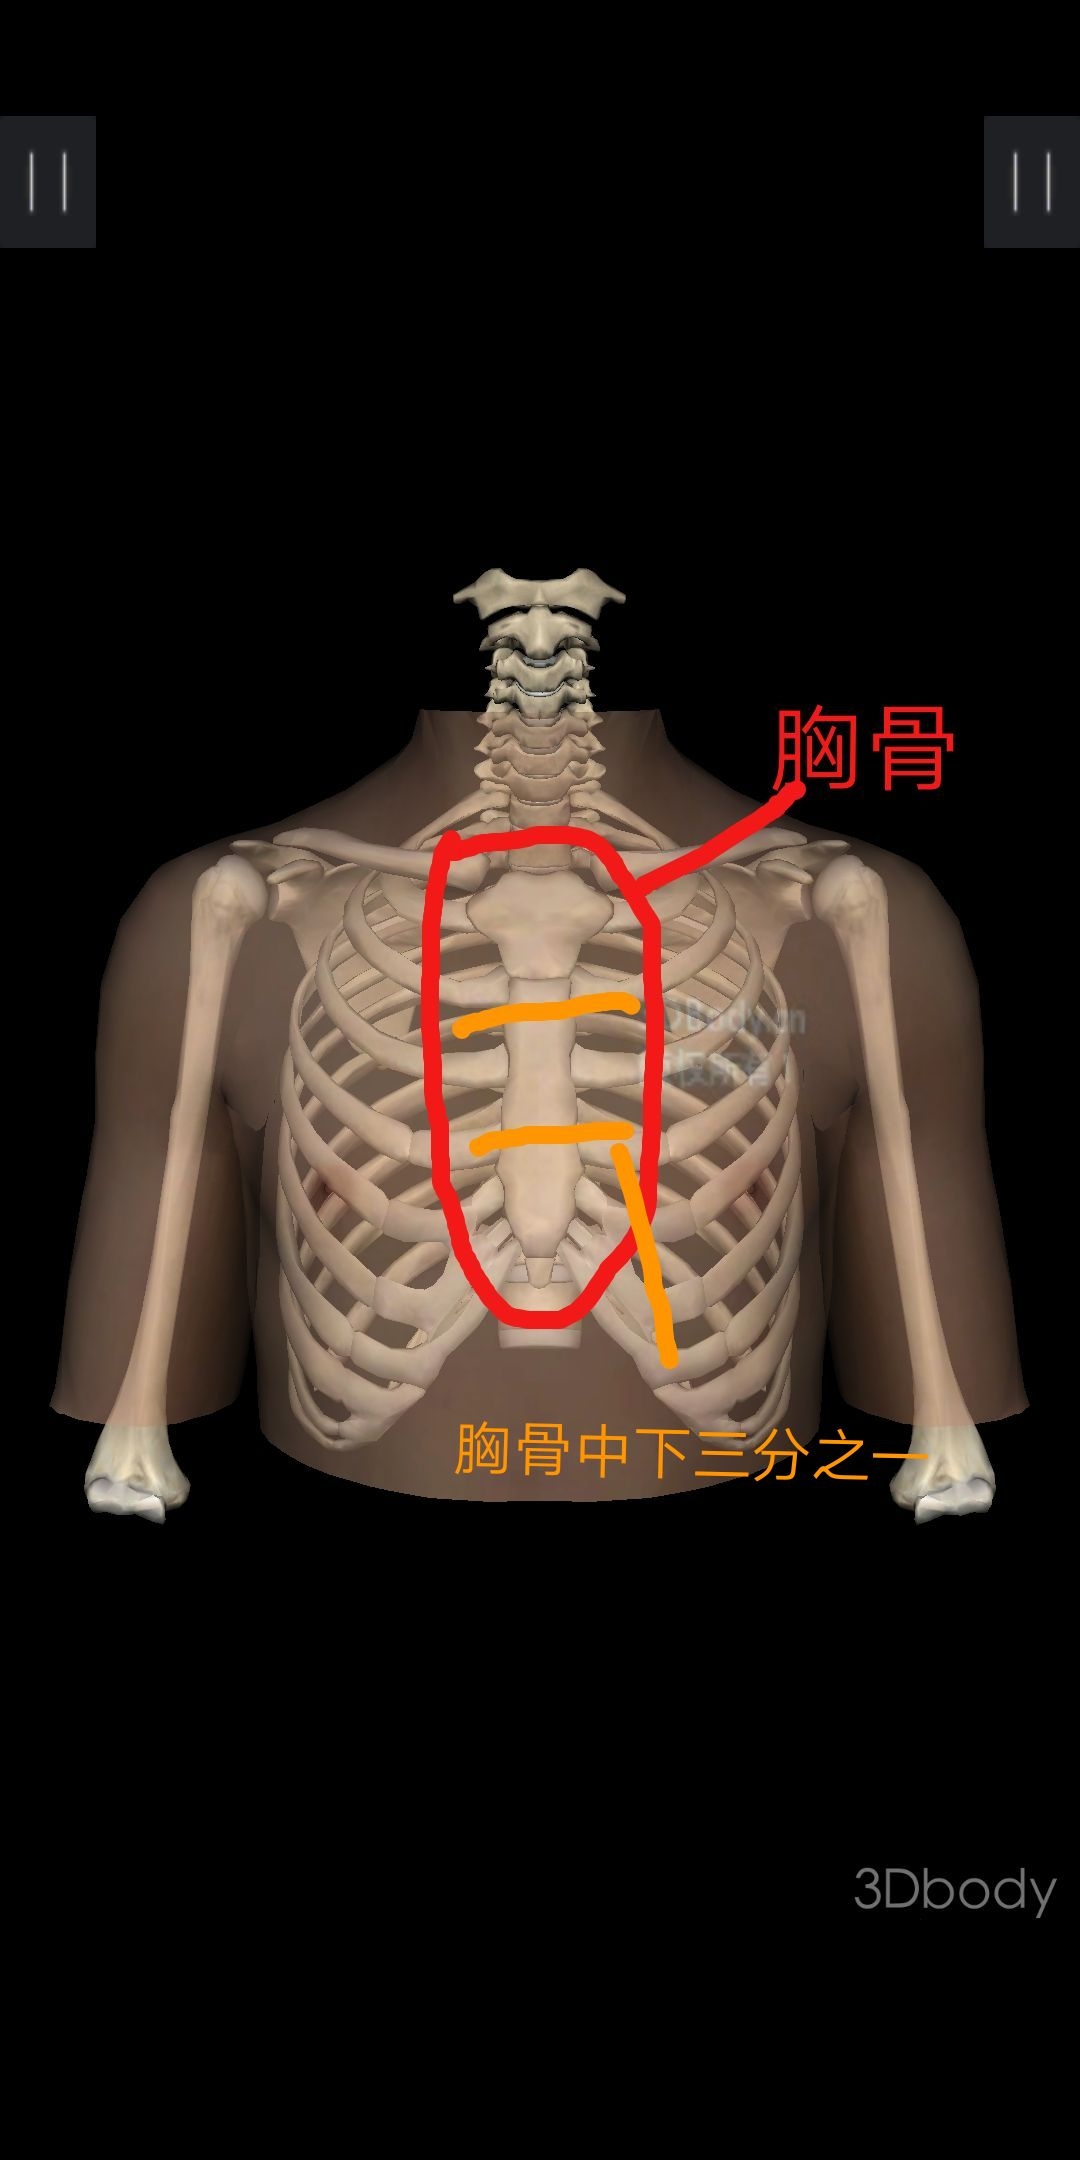 ⑦接下来进行胸外按压( circulation),首先要确定按压位置,大概在胸骨